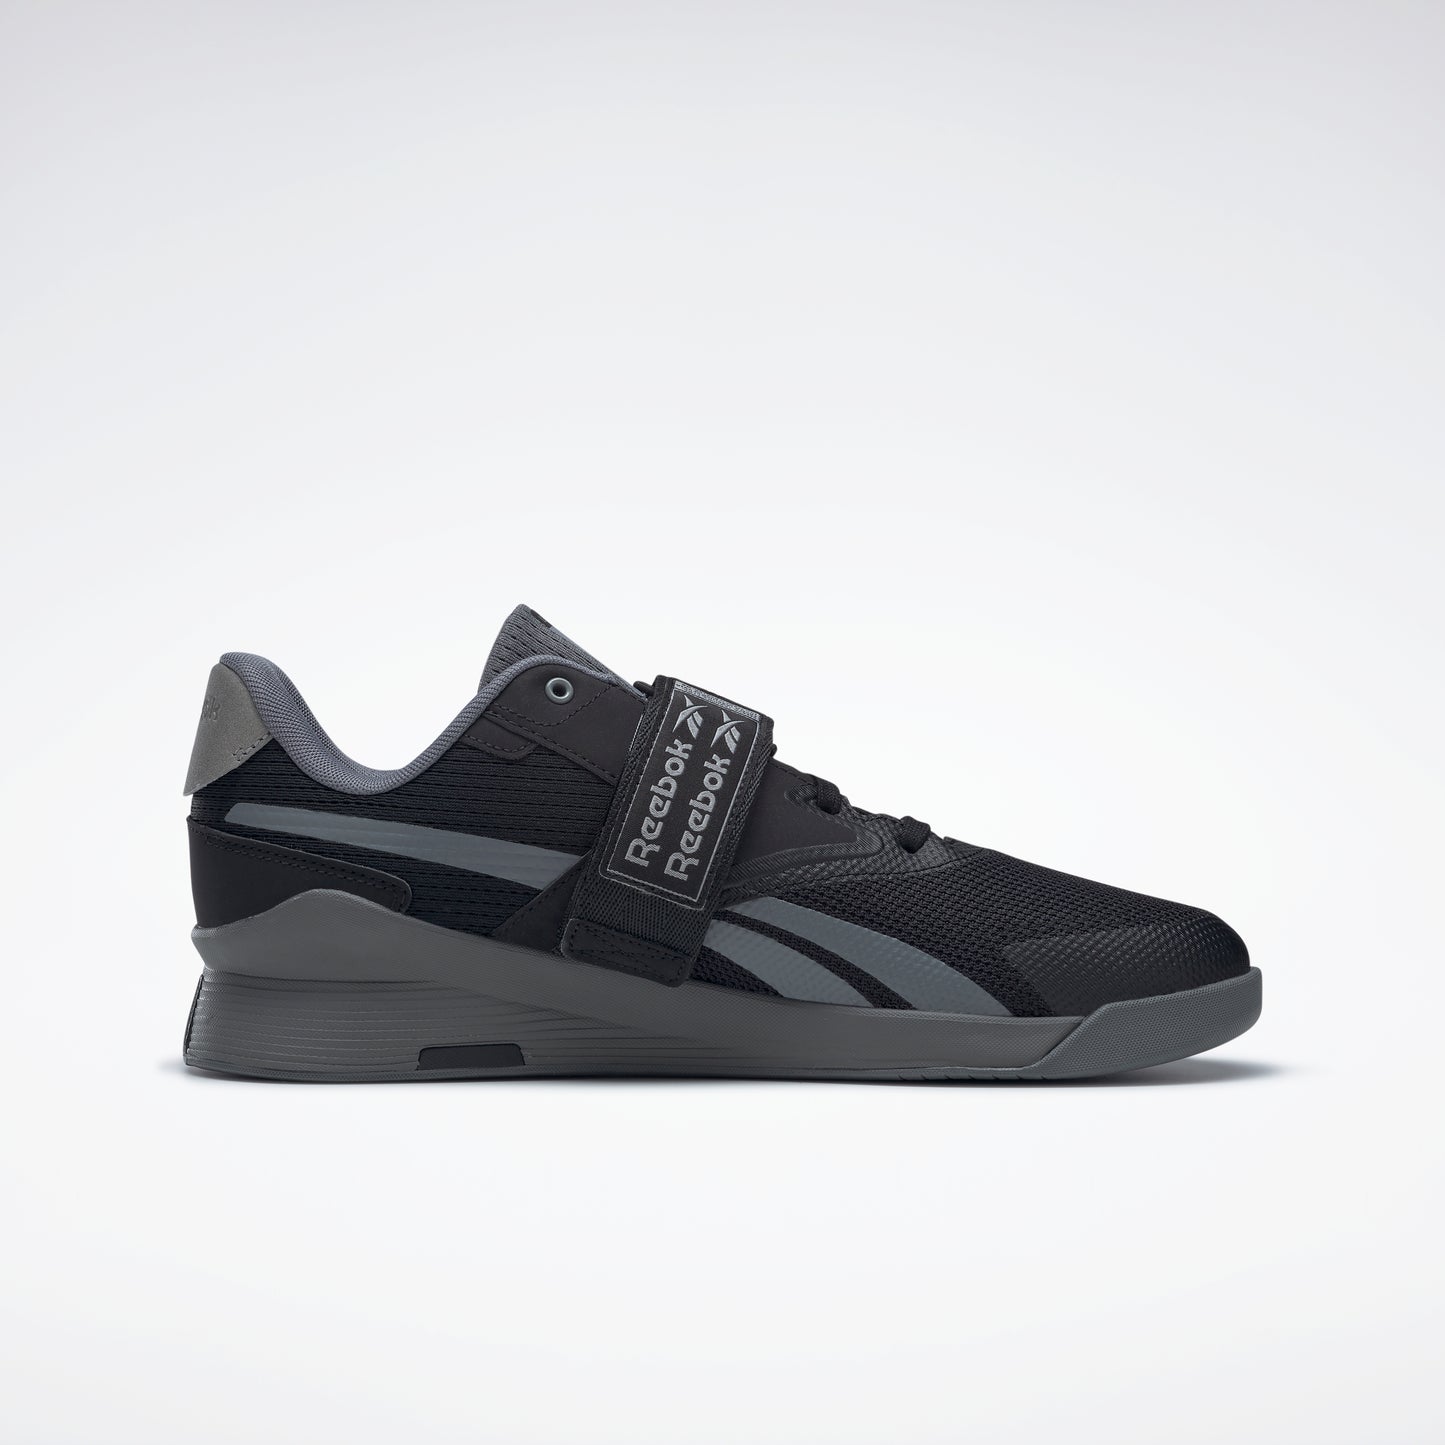 Reebok Footwear Men Lifter Pr Ii Shoes Core Black/Pewter/Pure Grey 6